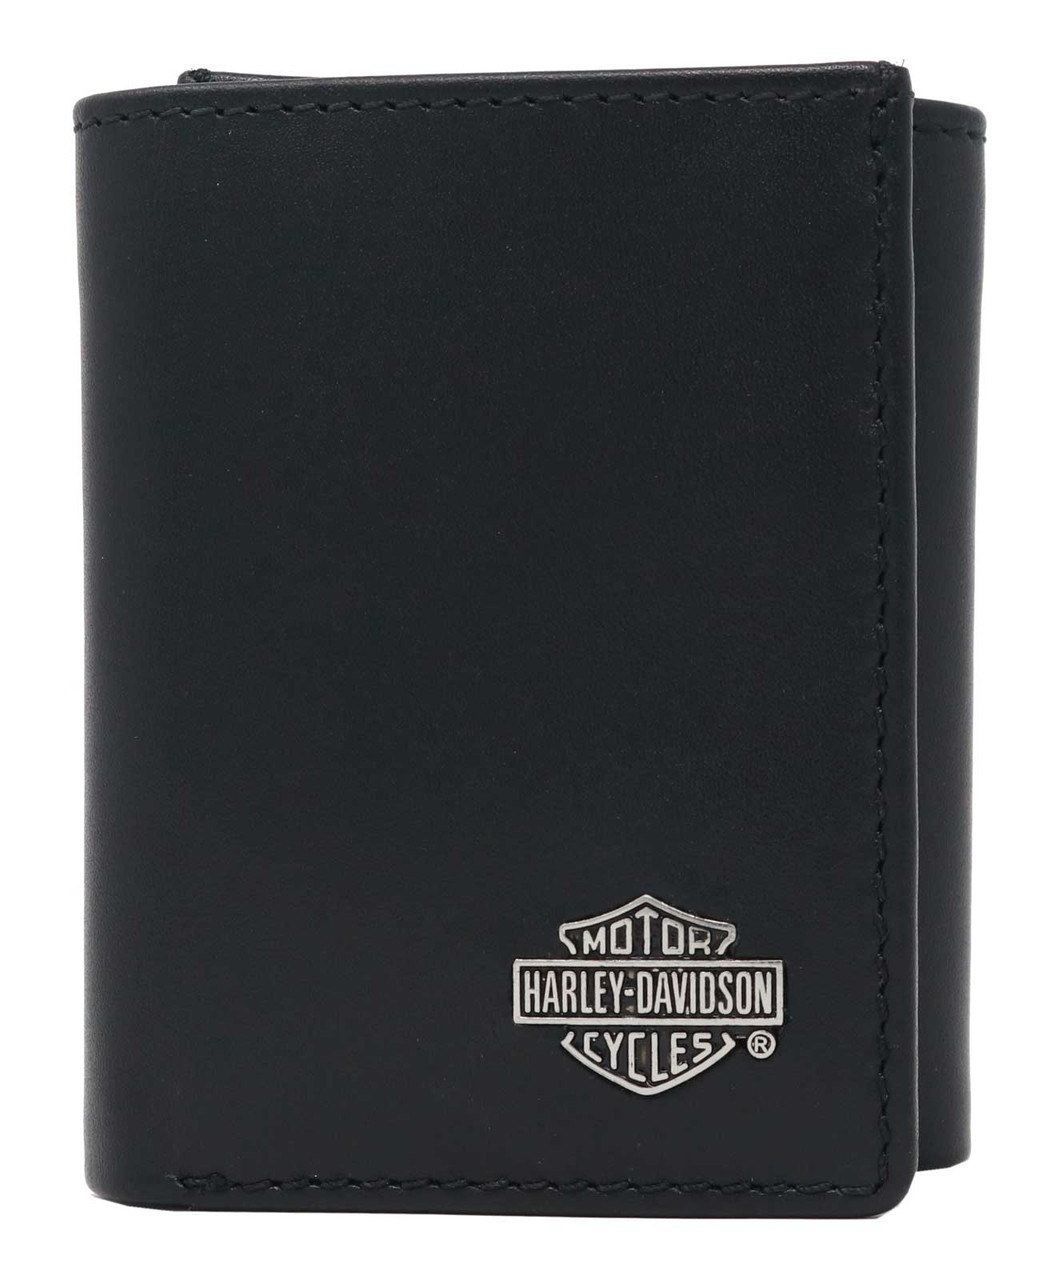 Harley-Davidson Men's Bar & Shield Leather Tri-Fold Wallet Boxed Gift Set- Black